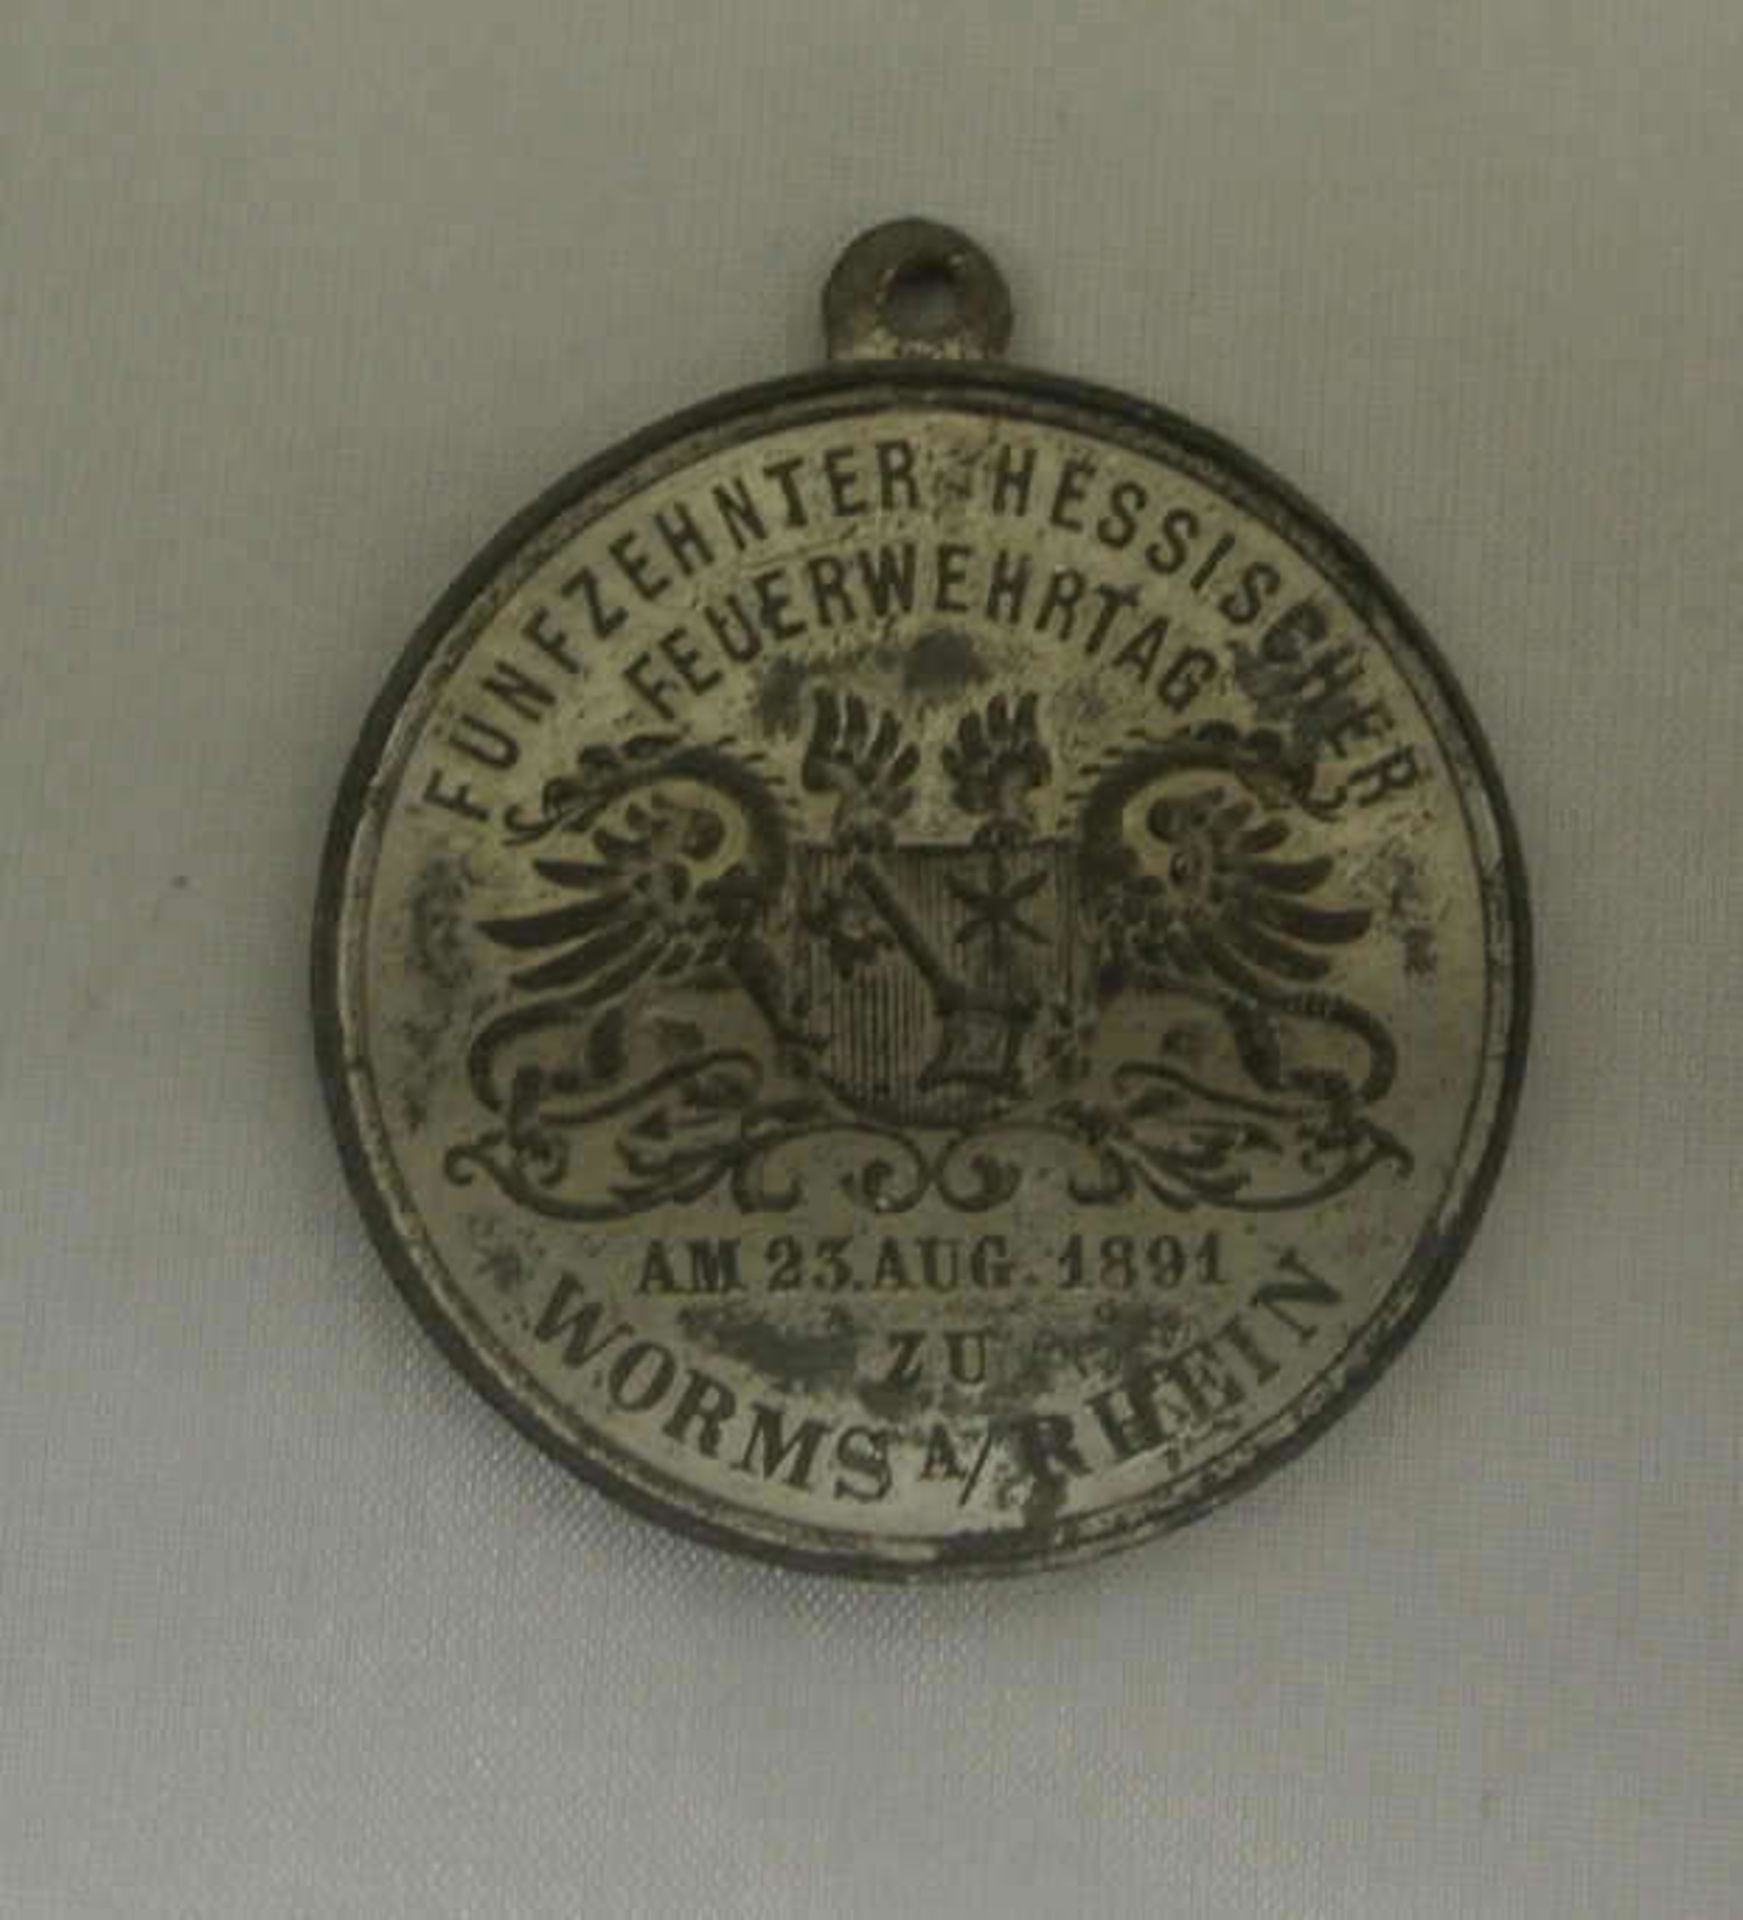 1 Medaille / Auszeichnung Fünfzehnter Hessischer Feuerwehrtag am 23. August 1891, Worms a. Rhein - Bild 2 aus 2